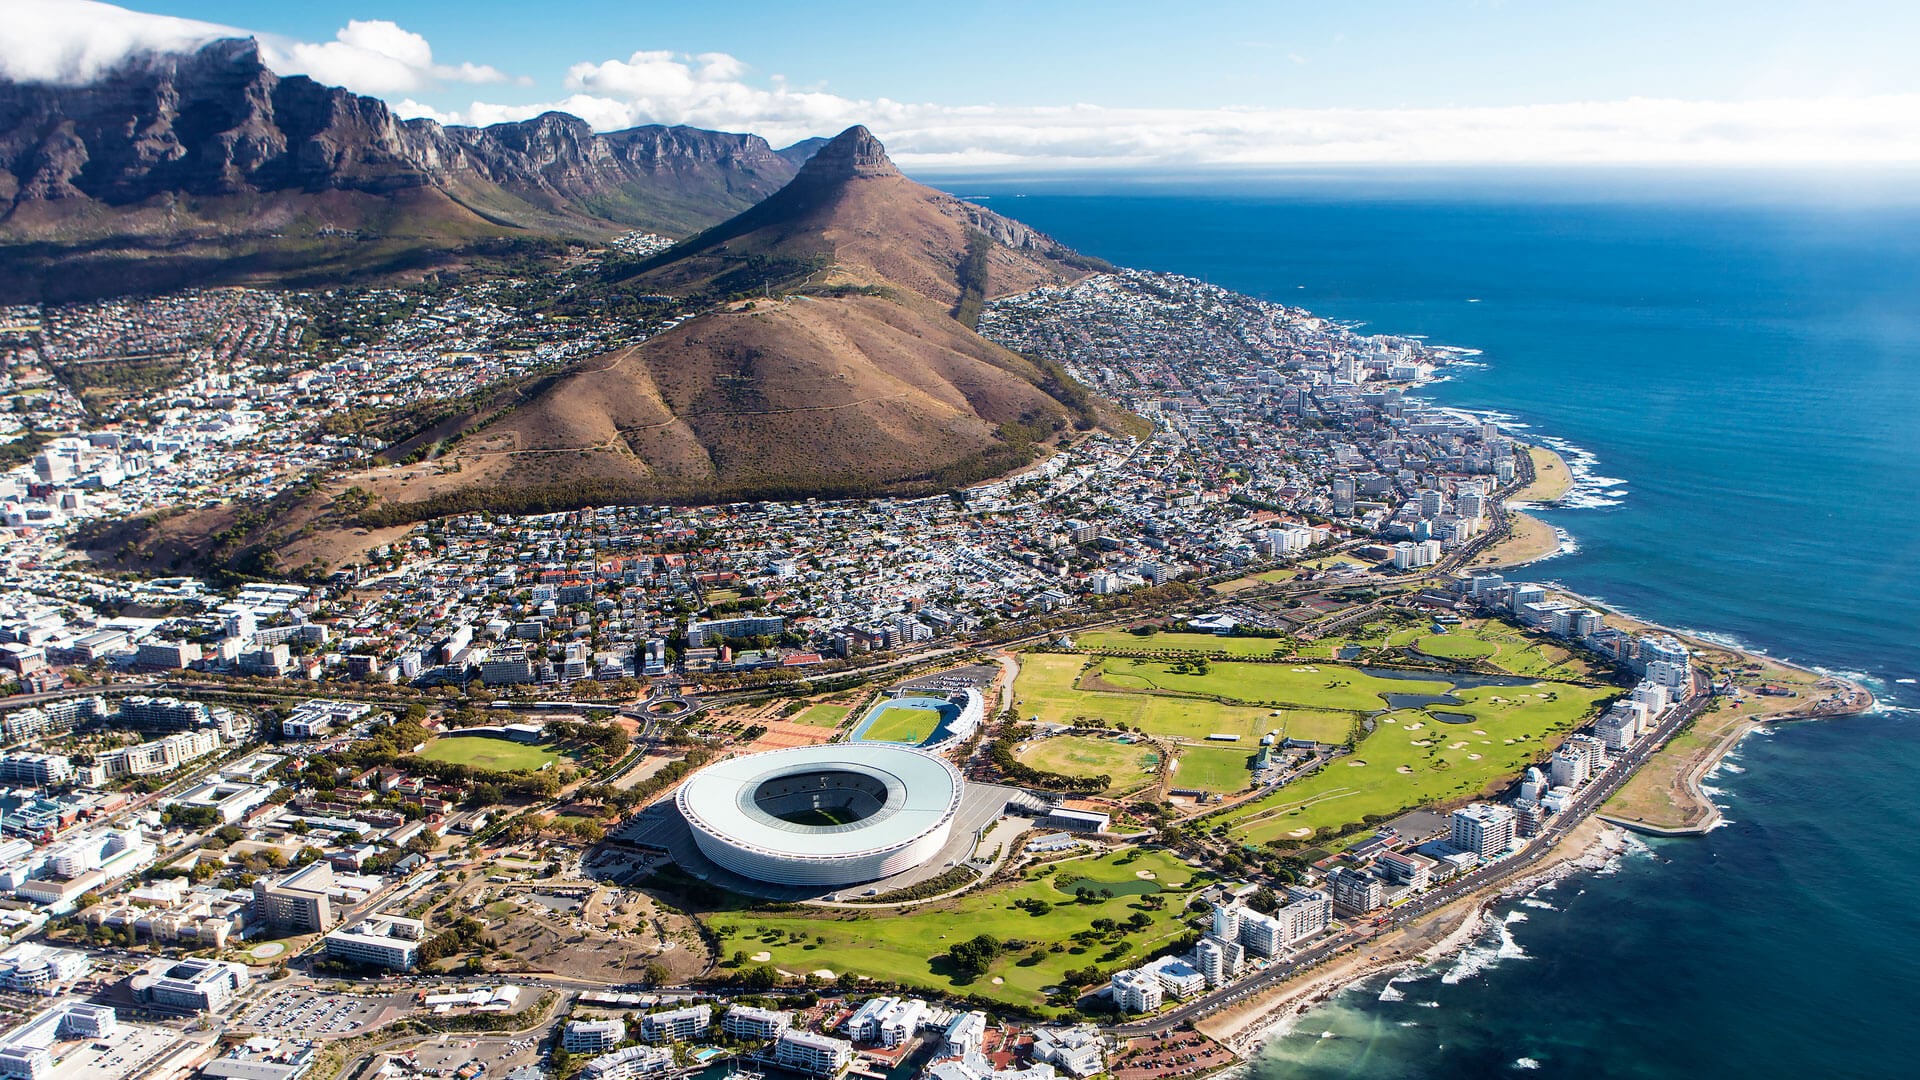  Cape-Town-development-city